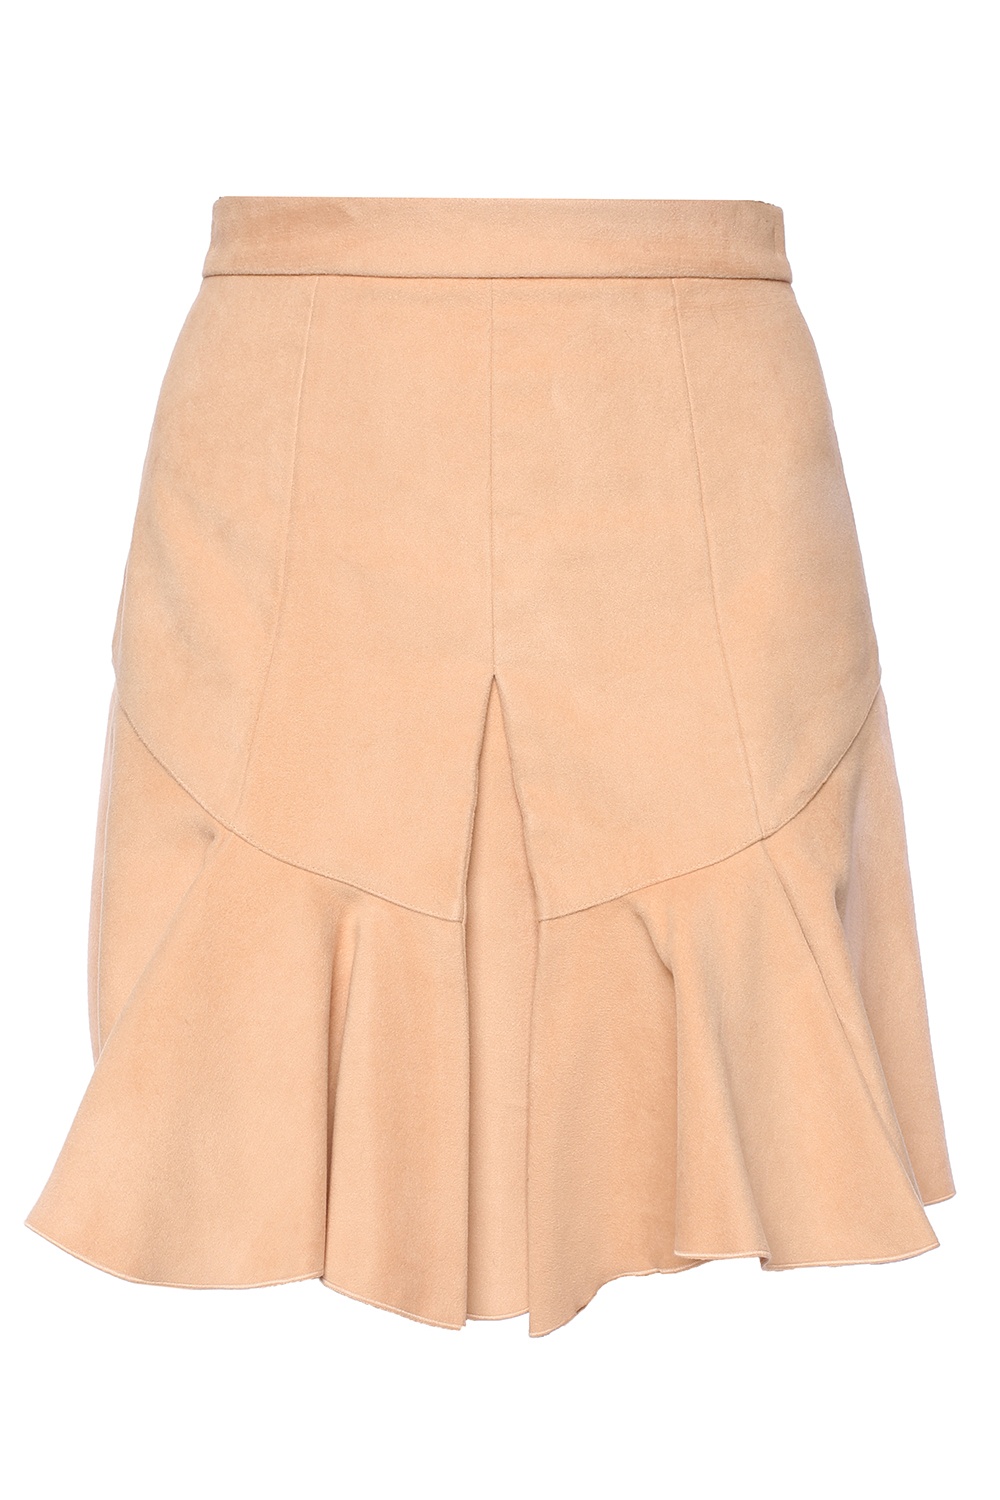 Pink Short ruffle skirt - Vitkac Australia